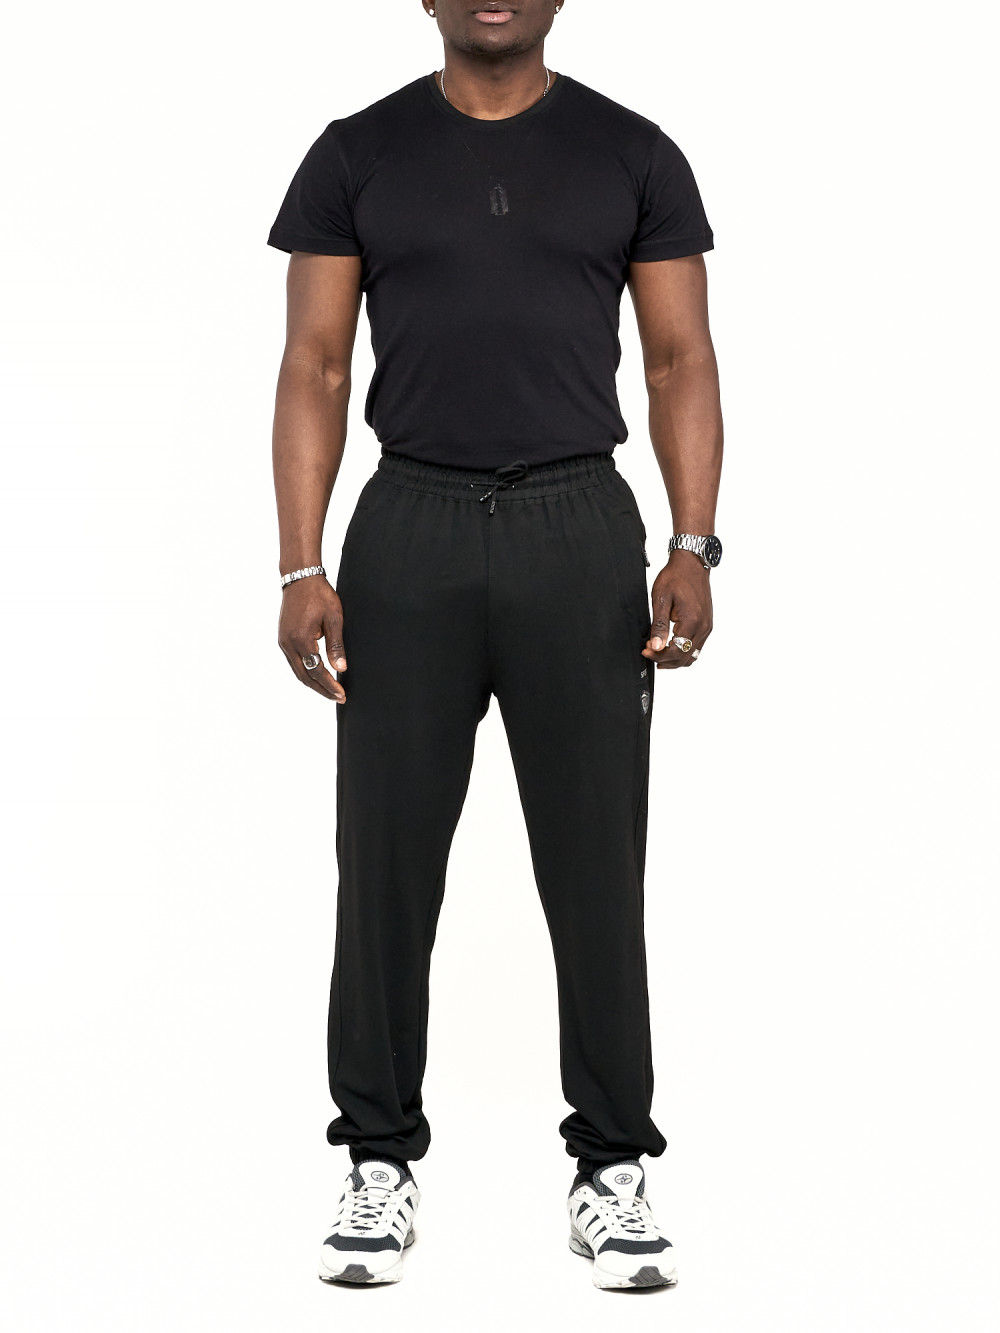 Спортивные брюки мужские NoBrand AD006 черные 58 RU